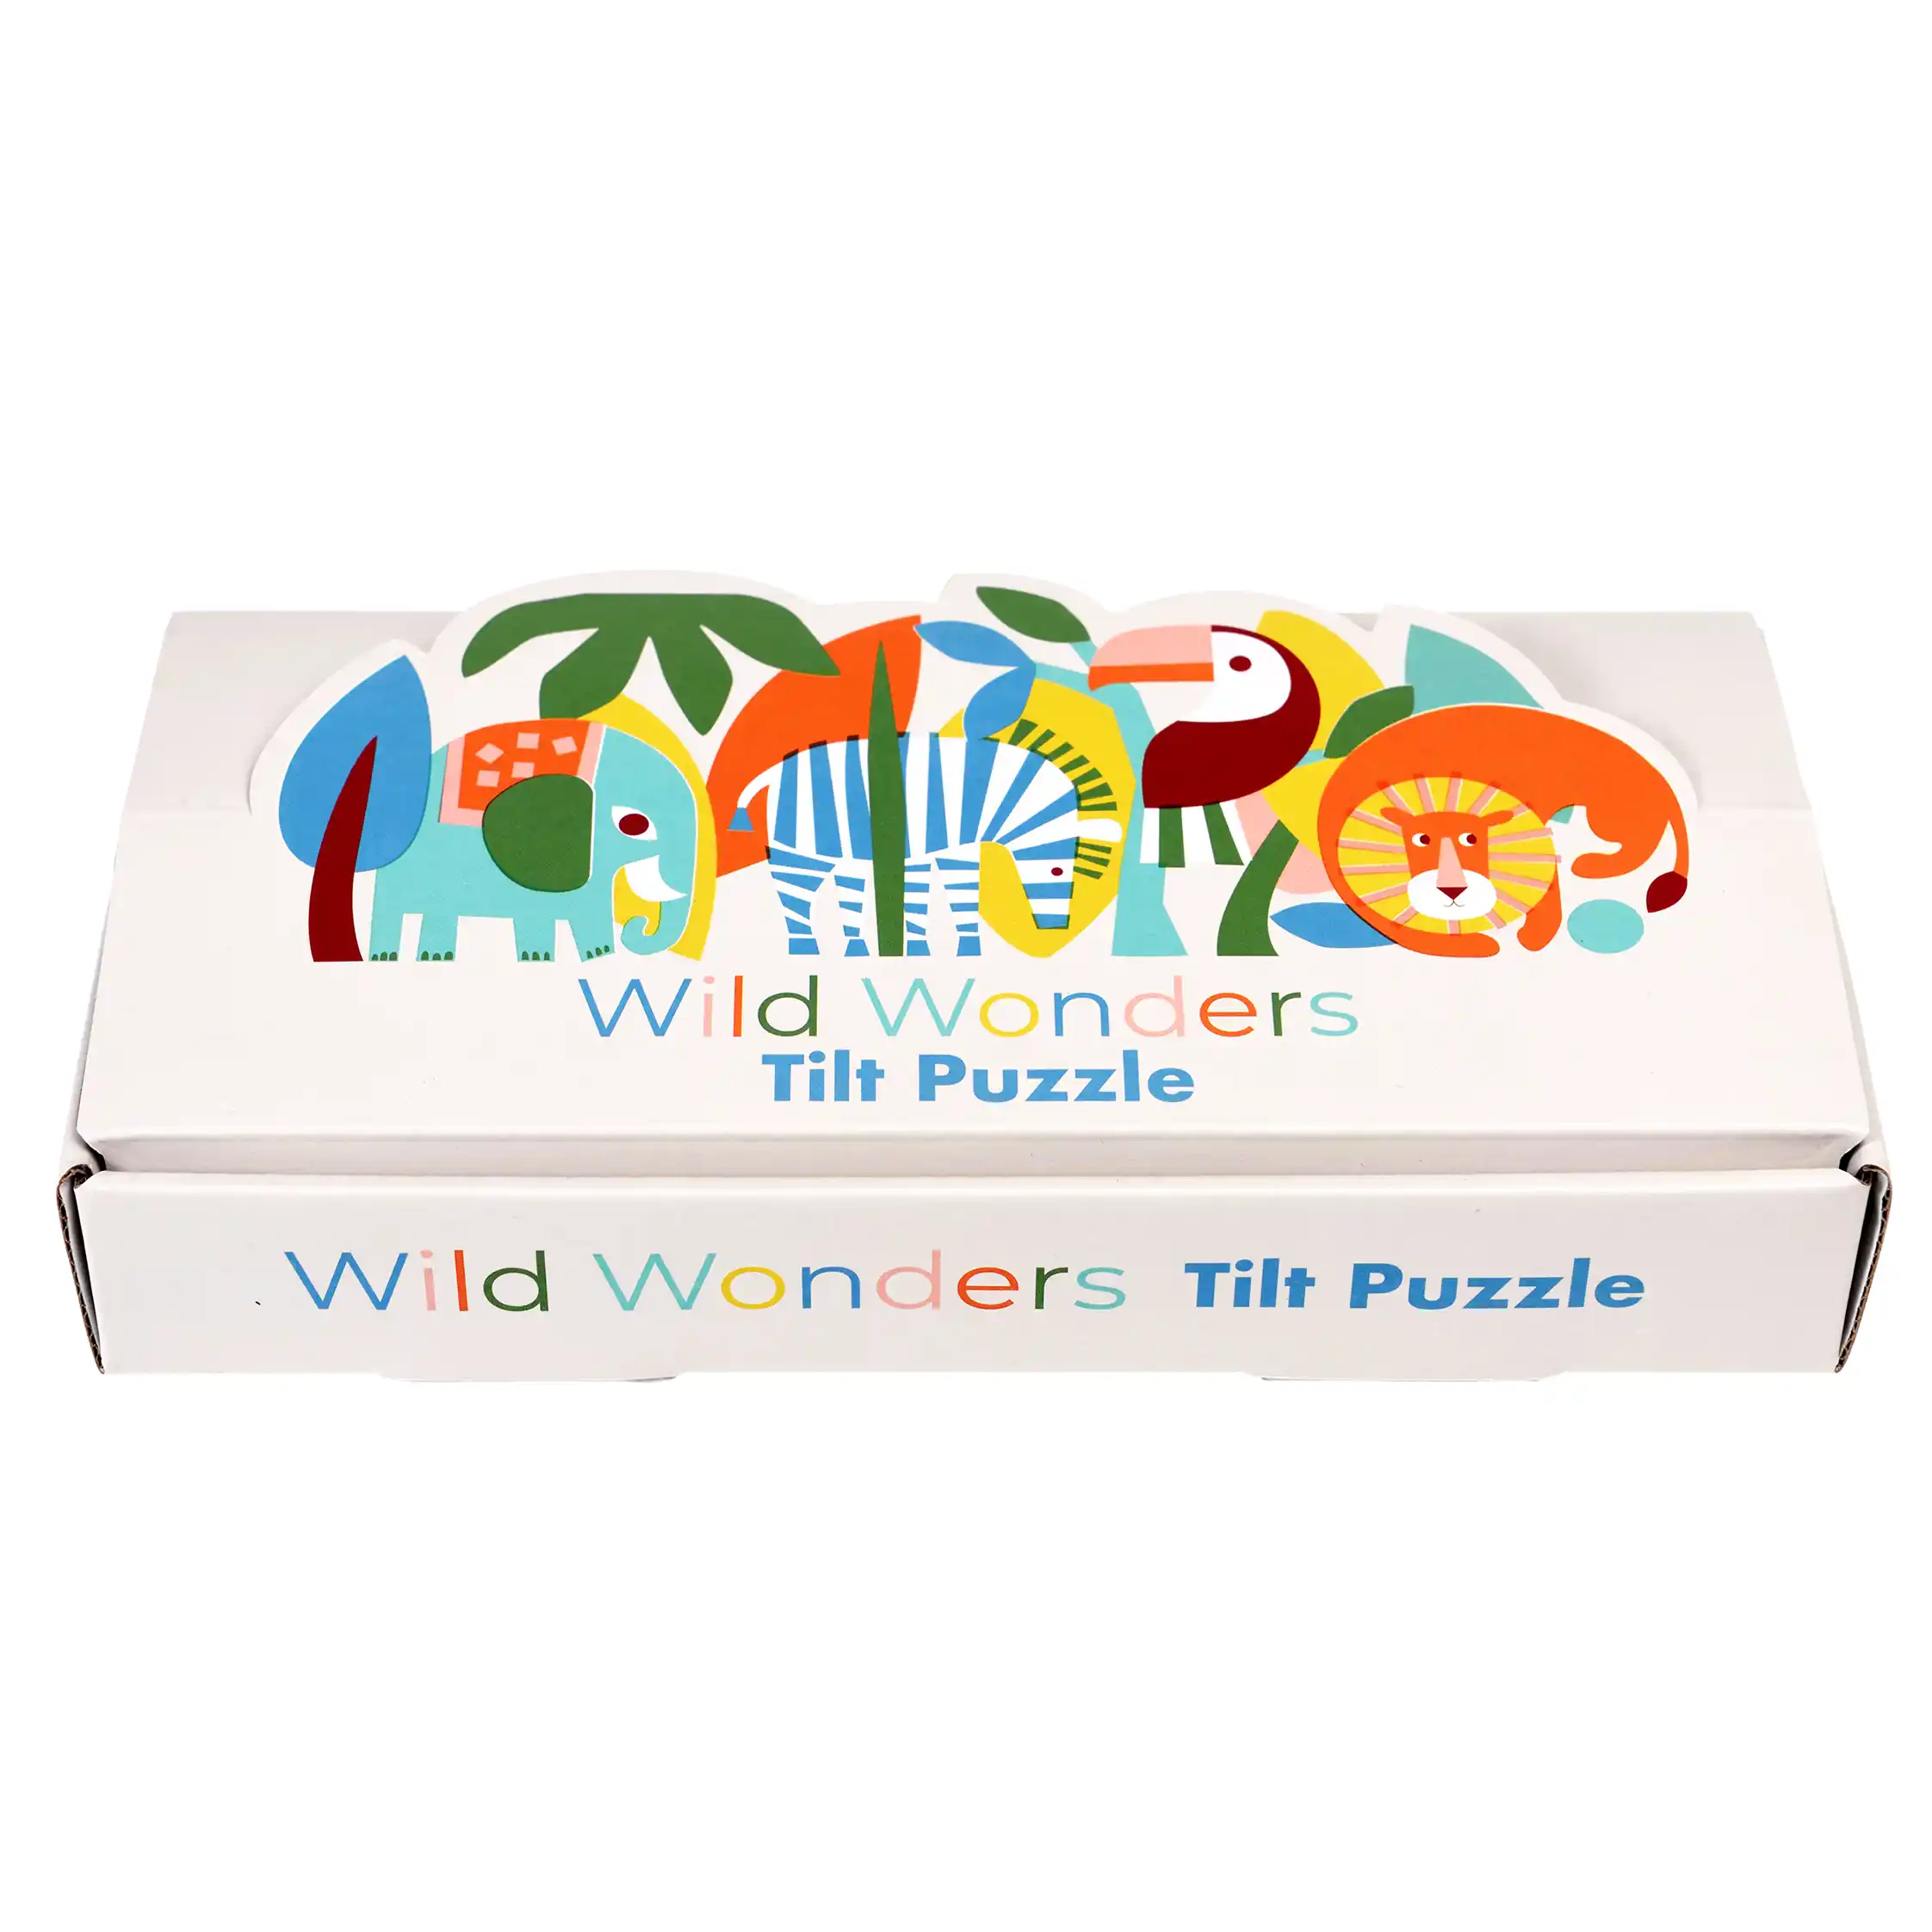 assorted tilt puzzles - wild wonders